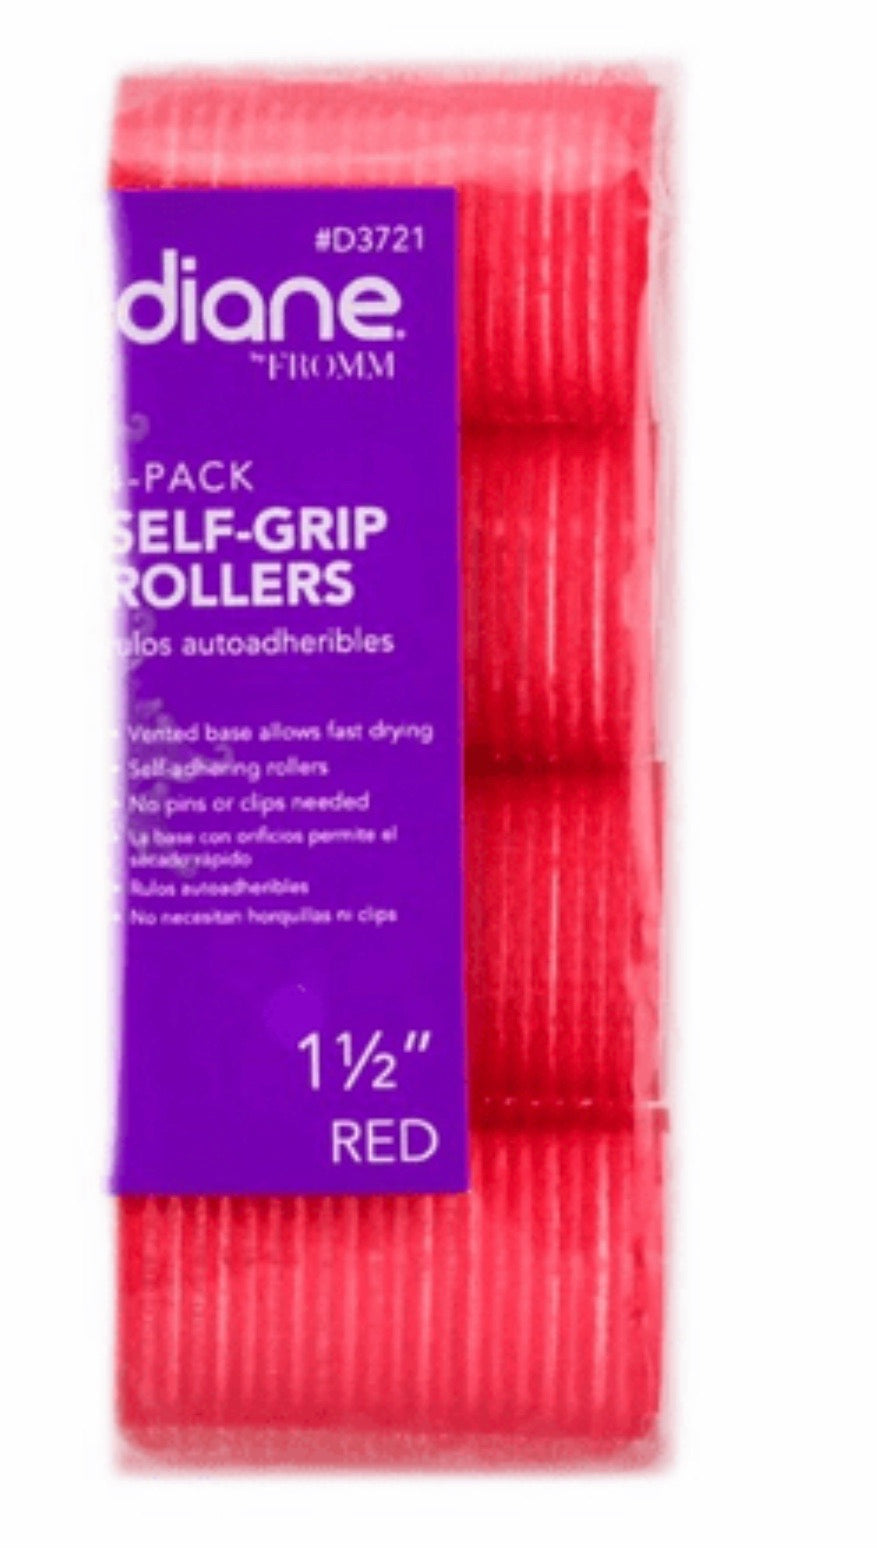 Diane 4-Pack Self Grip Rollers 1 1/2